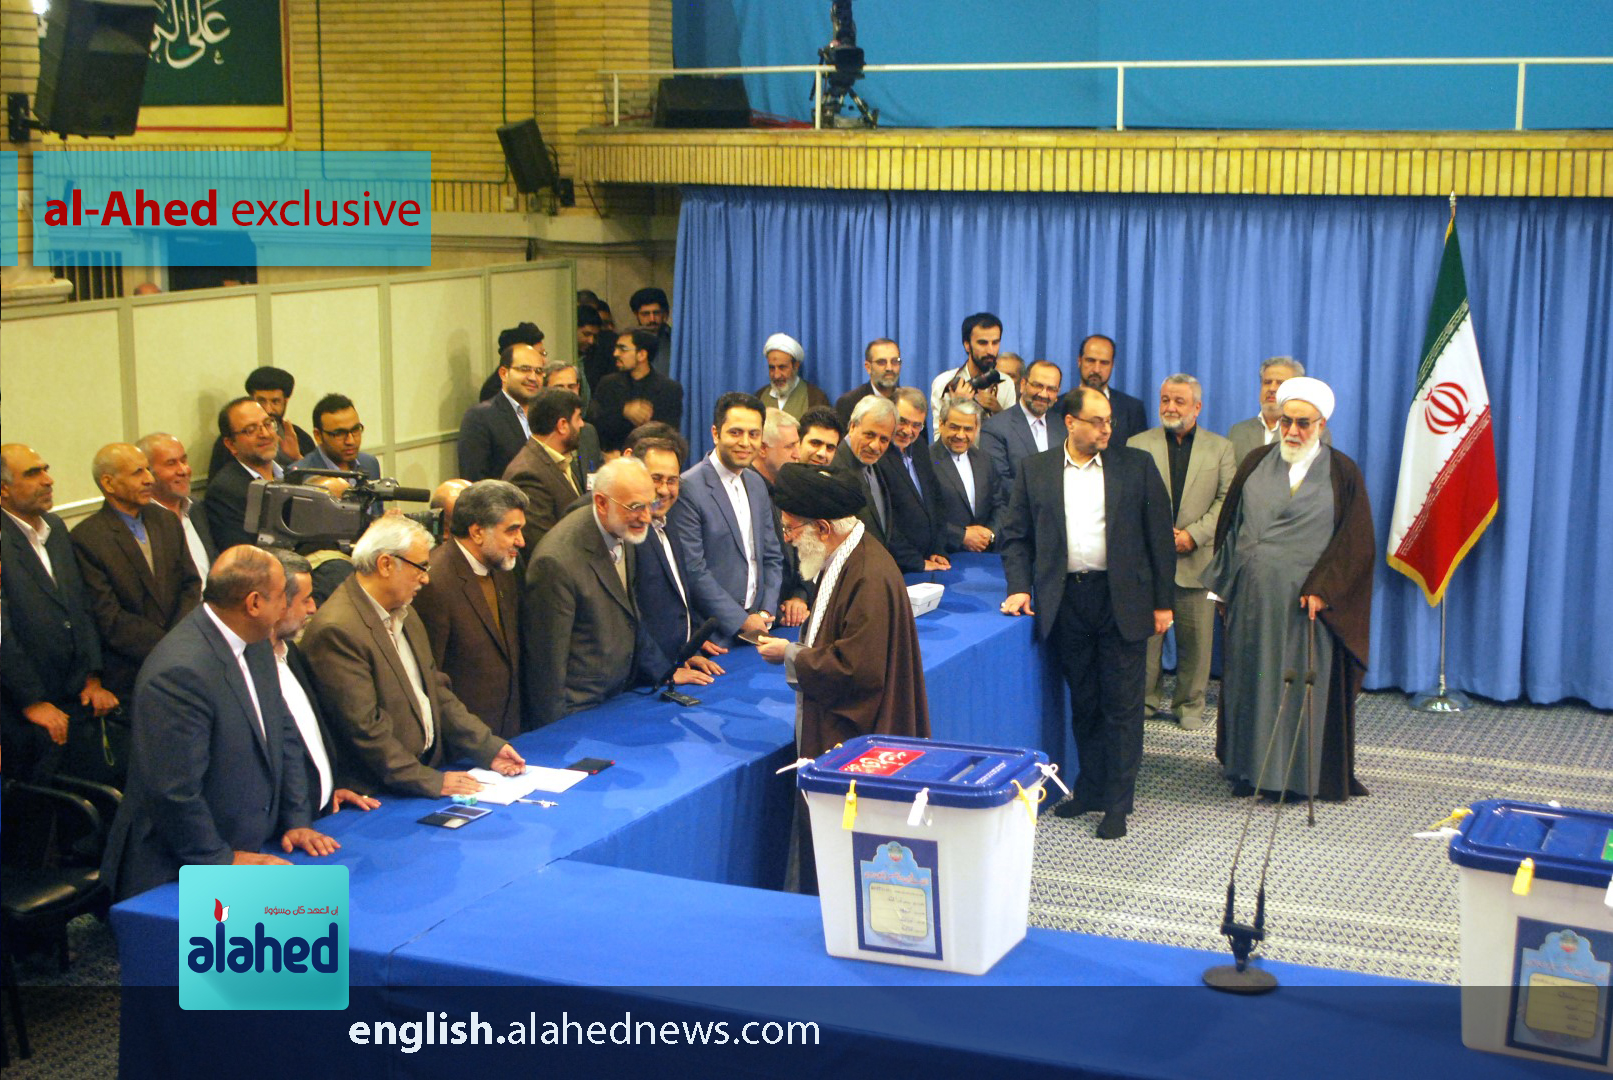 In Photos: Imam Khamenei Casts His Vote 